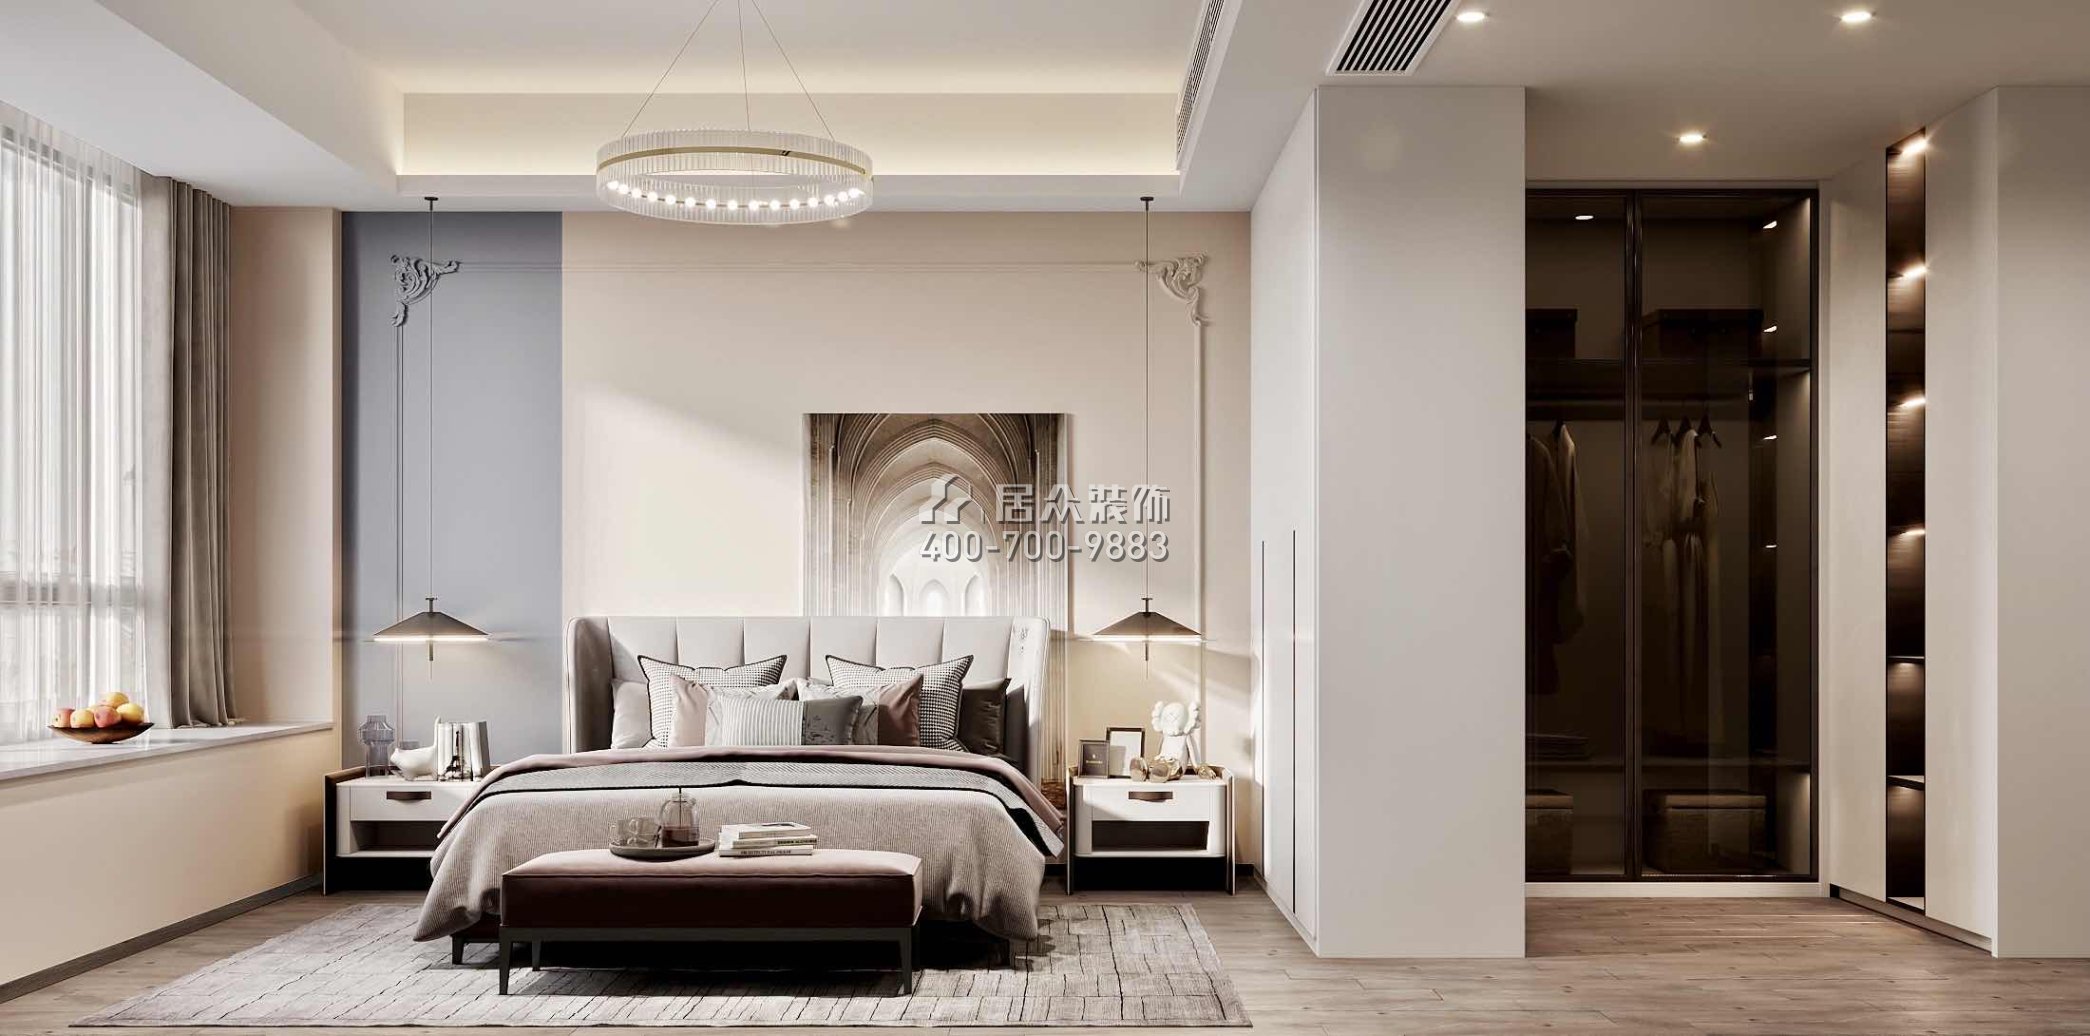 翠湖香山150平方米现代简约风格平层户型卧室装修效果图